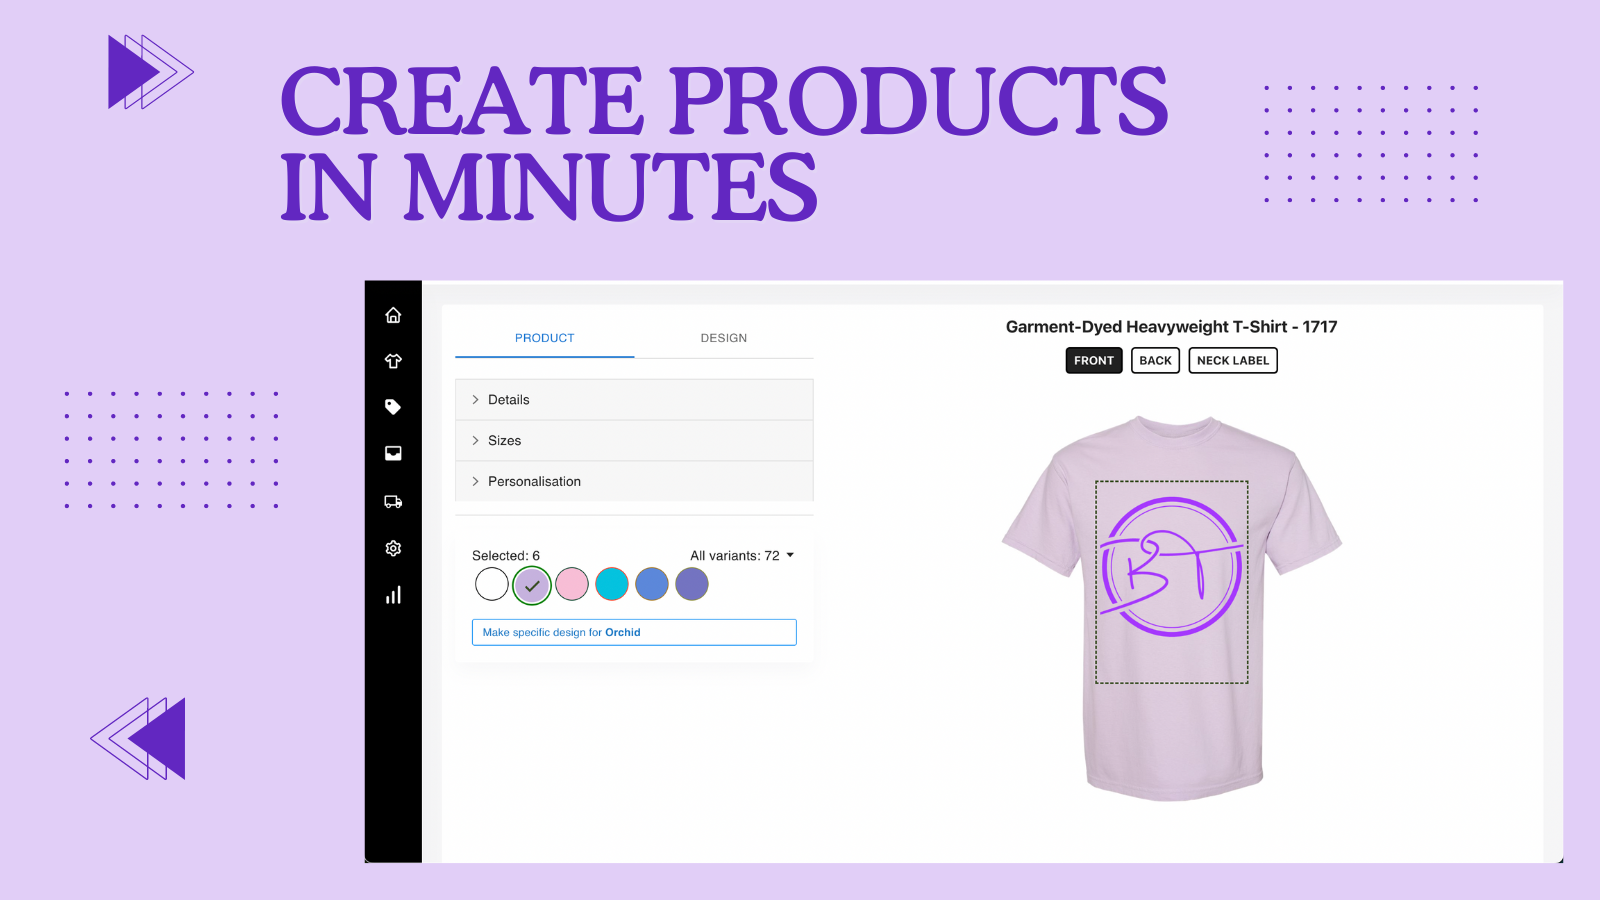 Gemakkelijk te gebruiken customizer om producten voor uw merk te creëren.